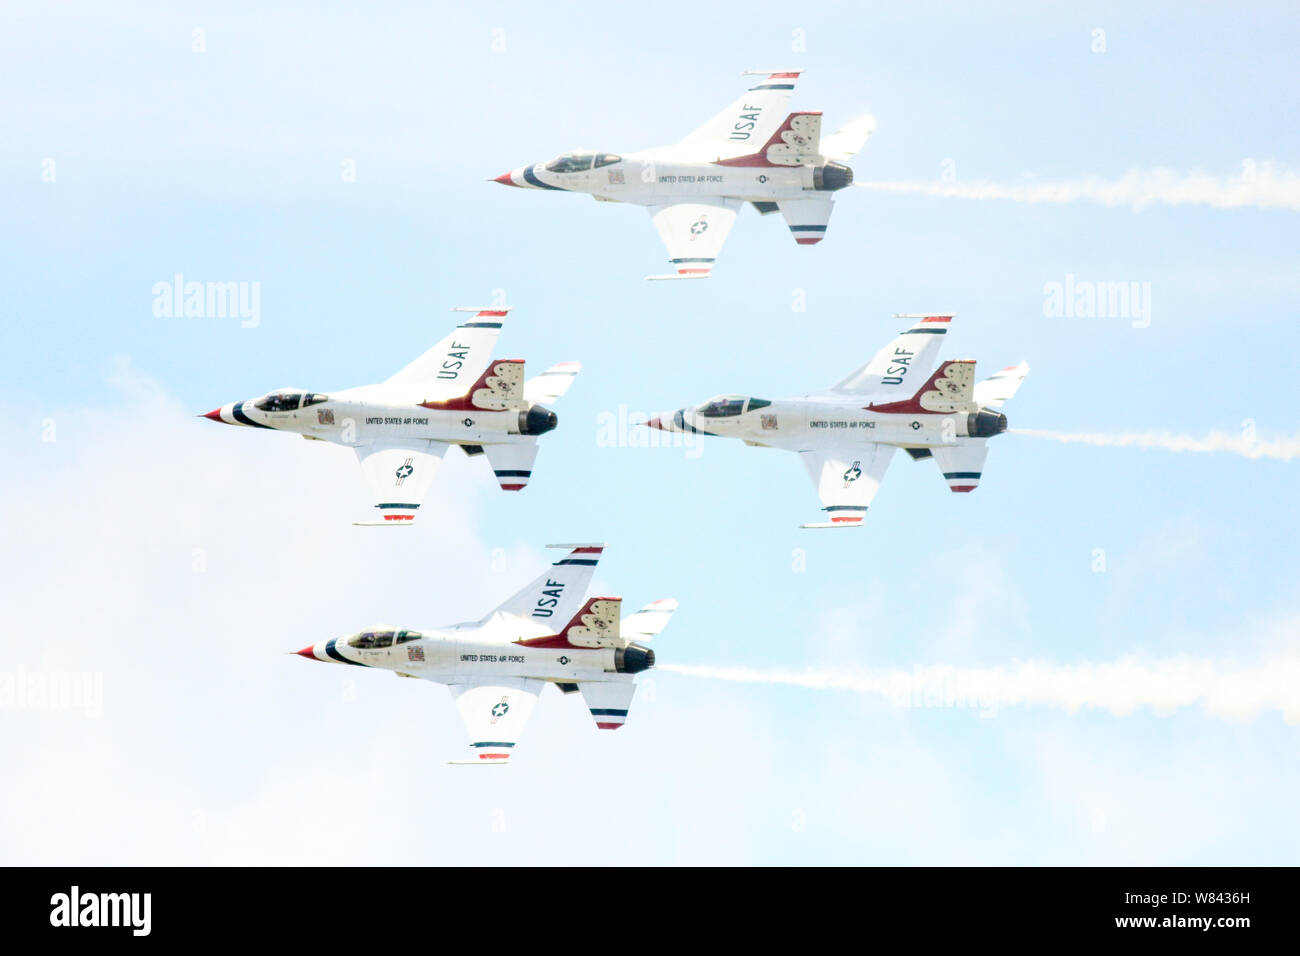 Les Thunderbirds de l'US Air Force les avions effectuant des manœuvres synchronisées dans un show aérien en vol Banque D'Images